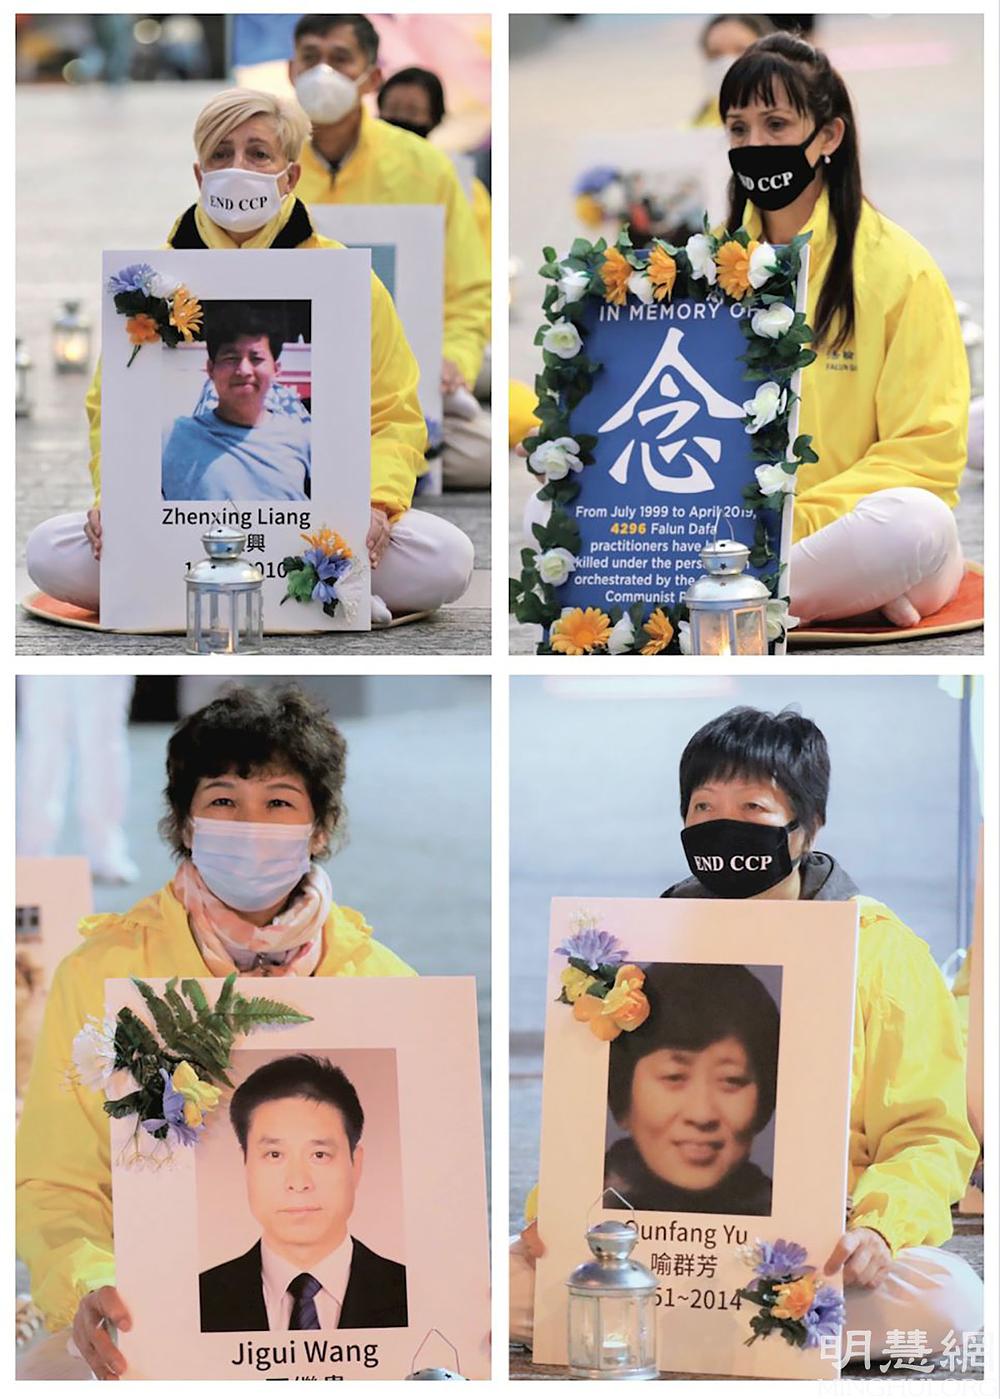 Praktikanti Falun Gonga održali su bdijenje uz svijeće na Trgu kralja Georgea u Brisbaneu, u večernjim satima 20. srpnja 2021., u znak sjećanja na 22 godine progona u Kini